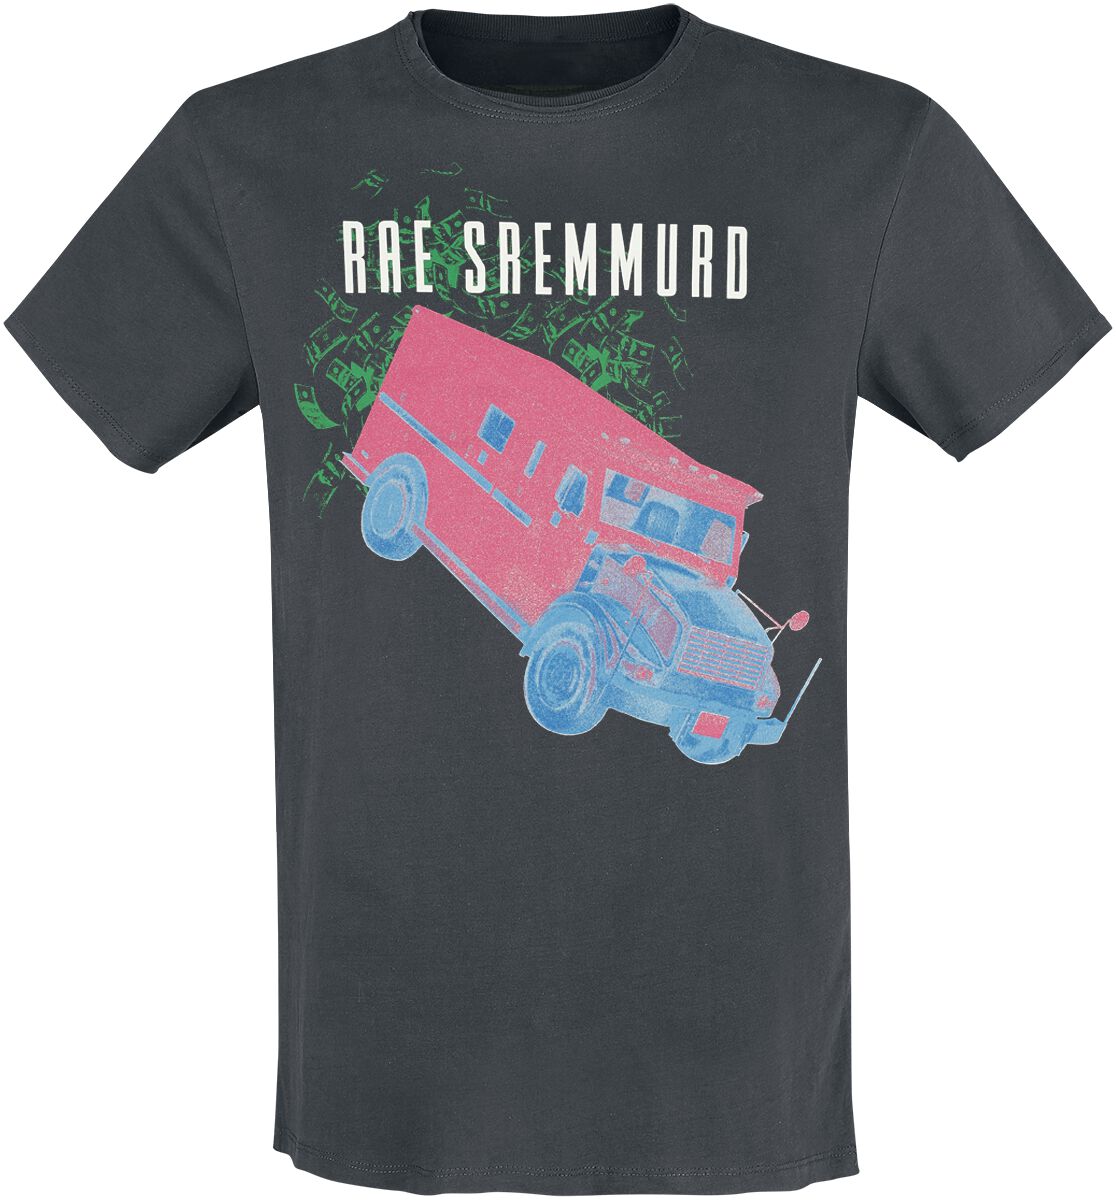 Rae Sremmurd T-Shirt - Amplified Collection - Cash Heist - S bis 3XL - für Männer - Größe 3XL - charcoal  - Lizenziertes Merchandise!